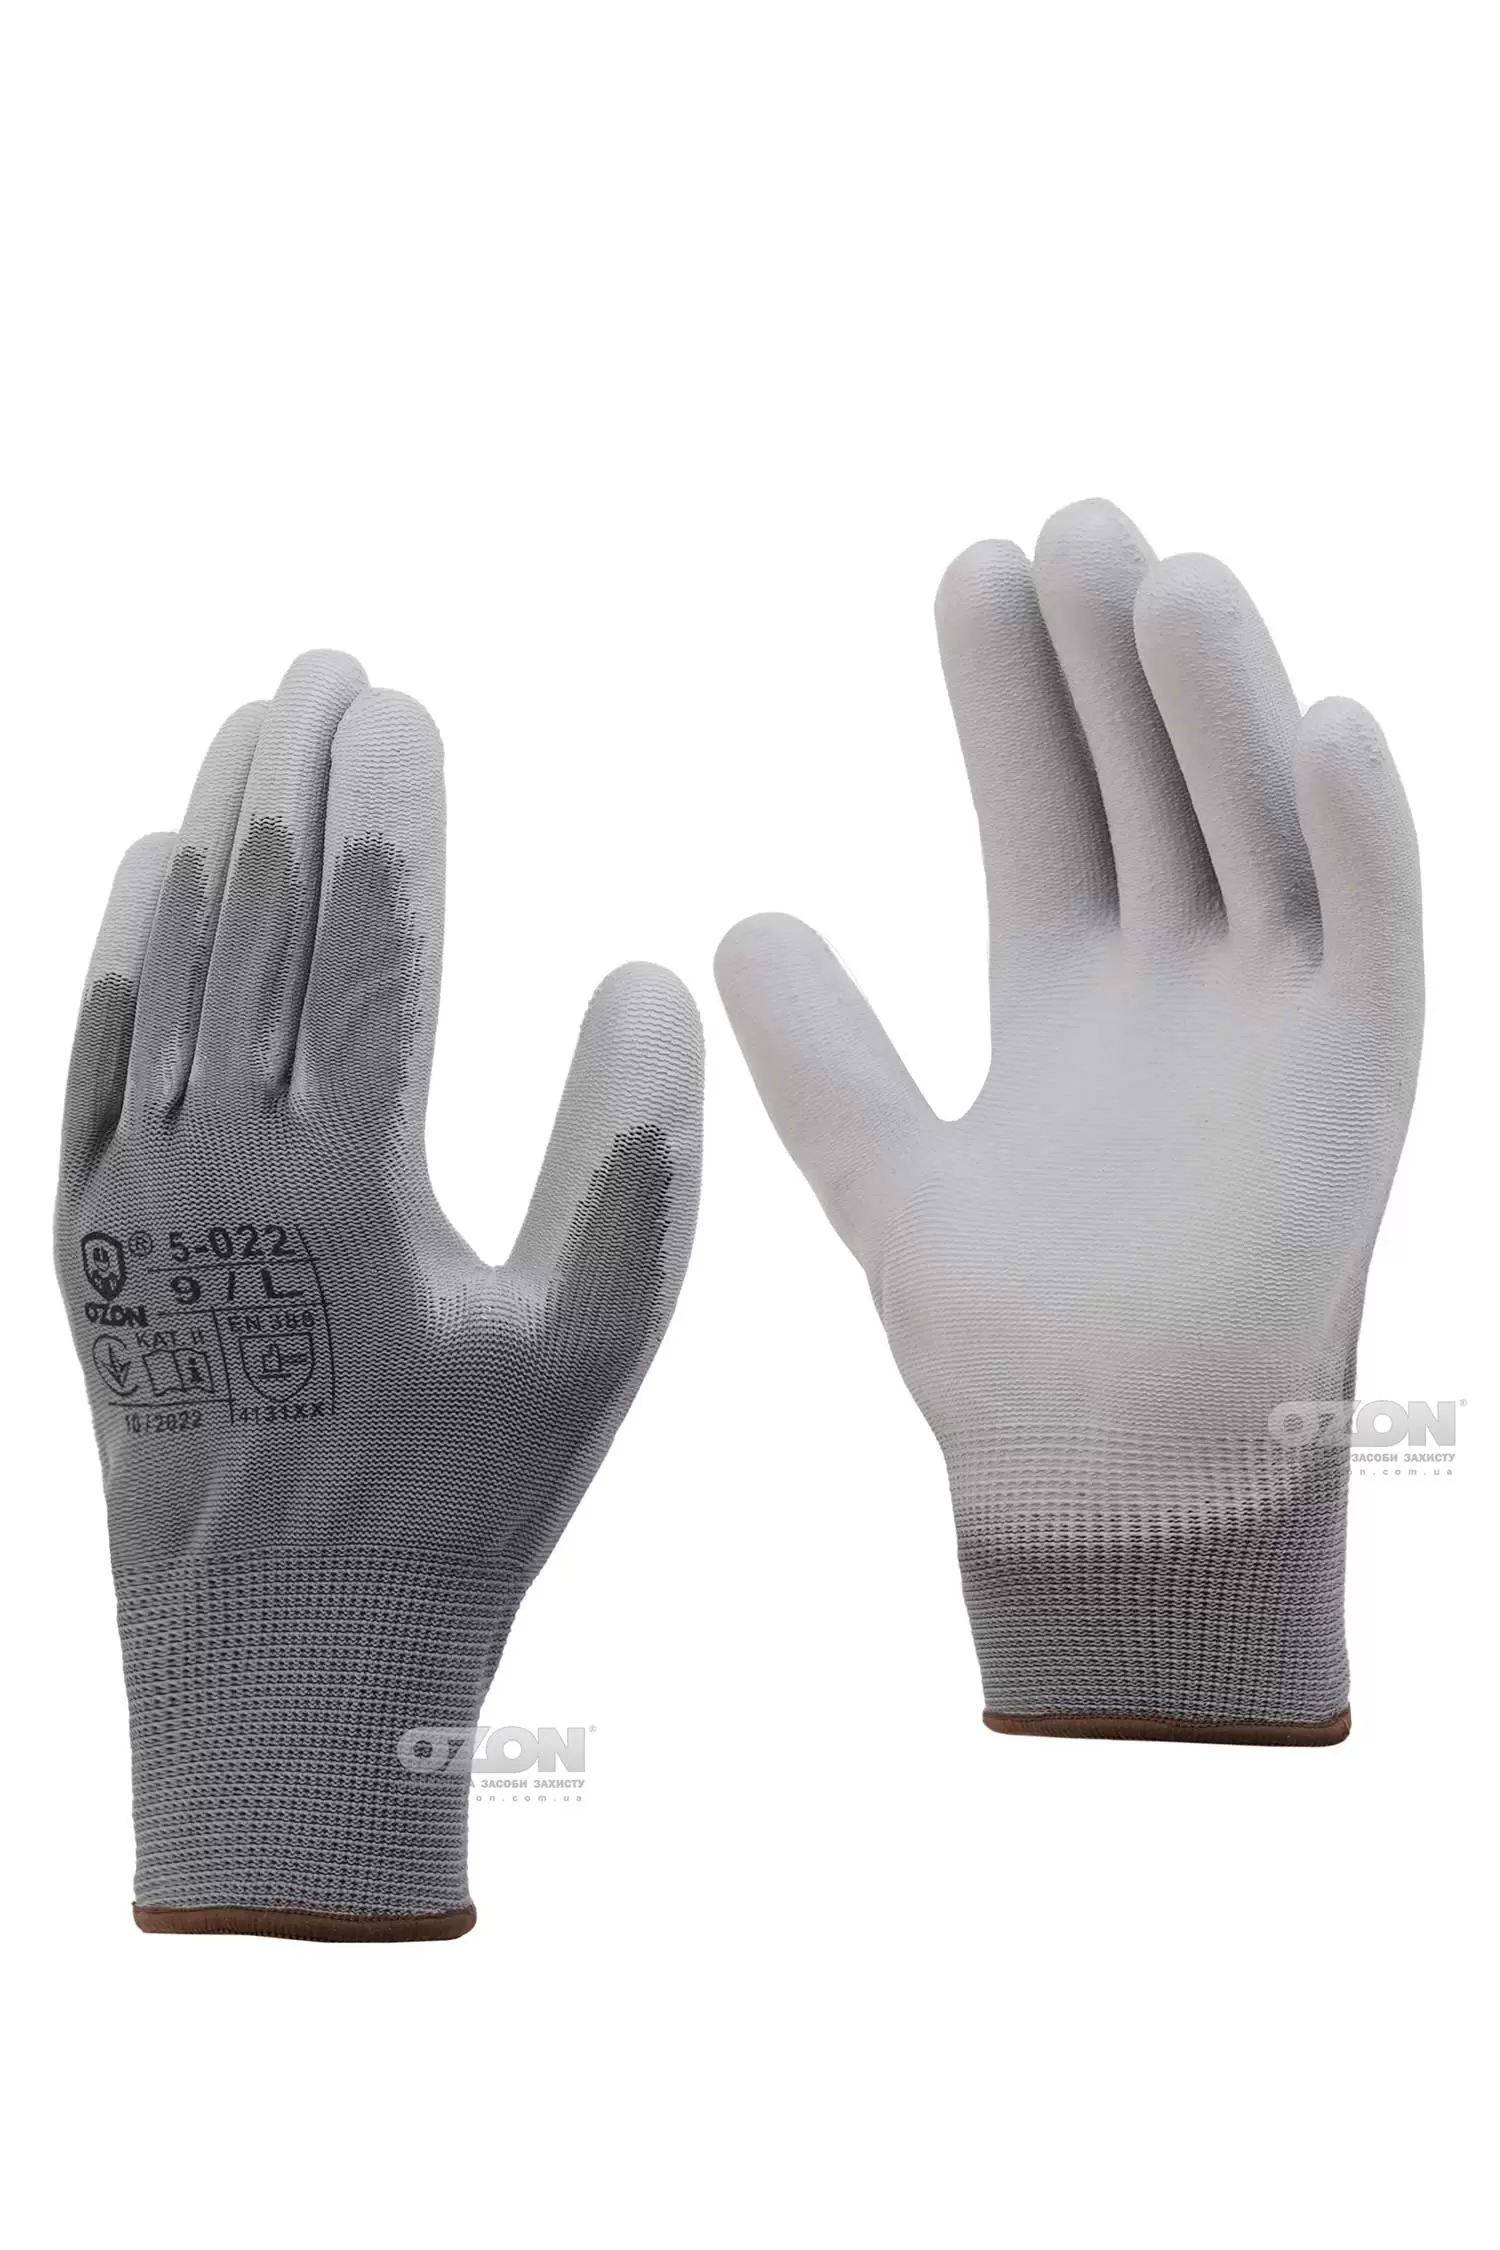 12 пар рукавички трикотажні з поліуретановим покриттям OZON, 5-022 - Фото 1